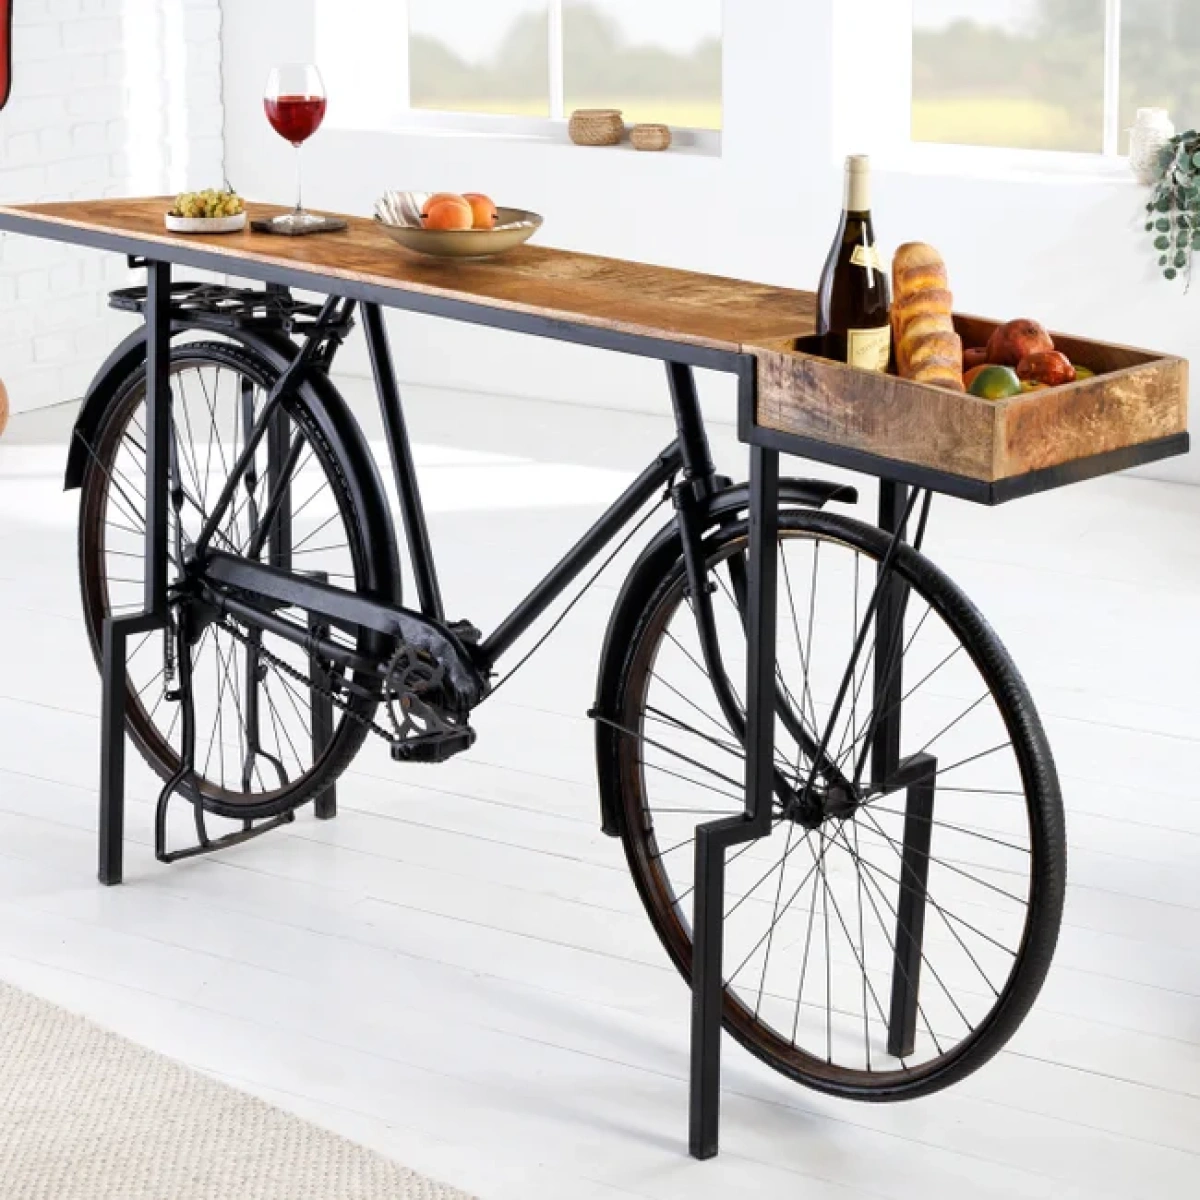 barek-rower-kolor-bialy-czarny-blat-drewno-mango-194x38cm-6